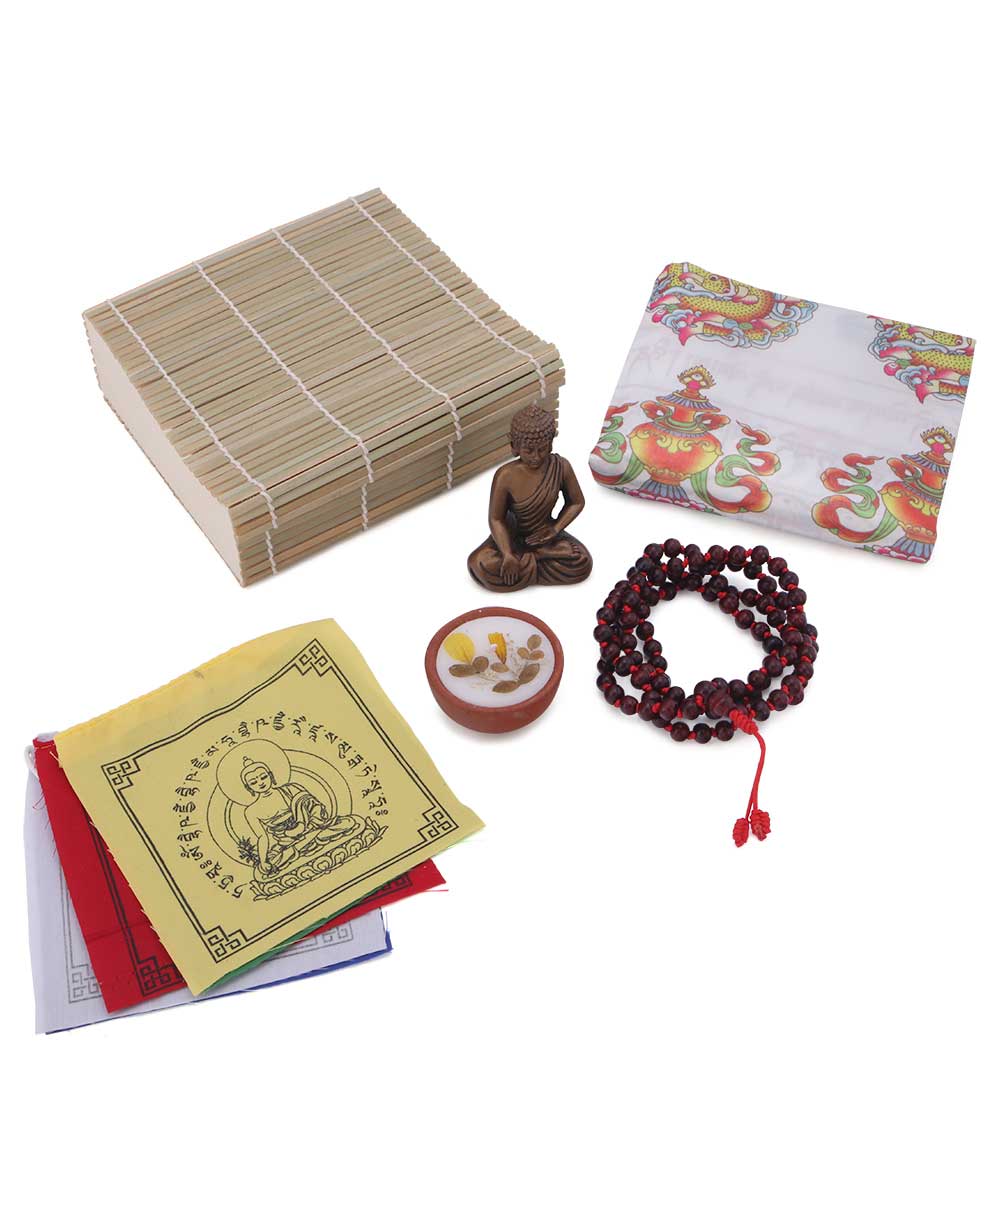 https://buddhagroove.com/cdn/shop/products/buddha-meditation-kit-gift-box-964043_1800x1800.jpg?v=1679300620